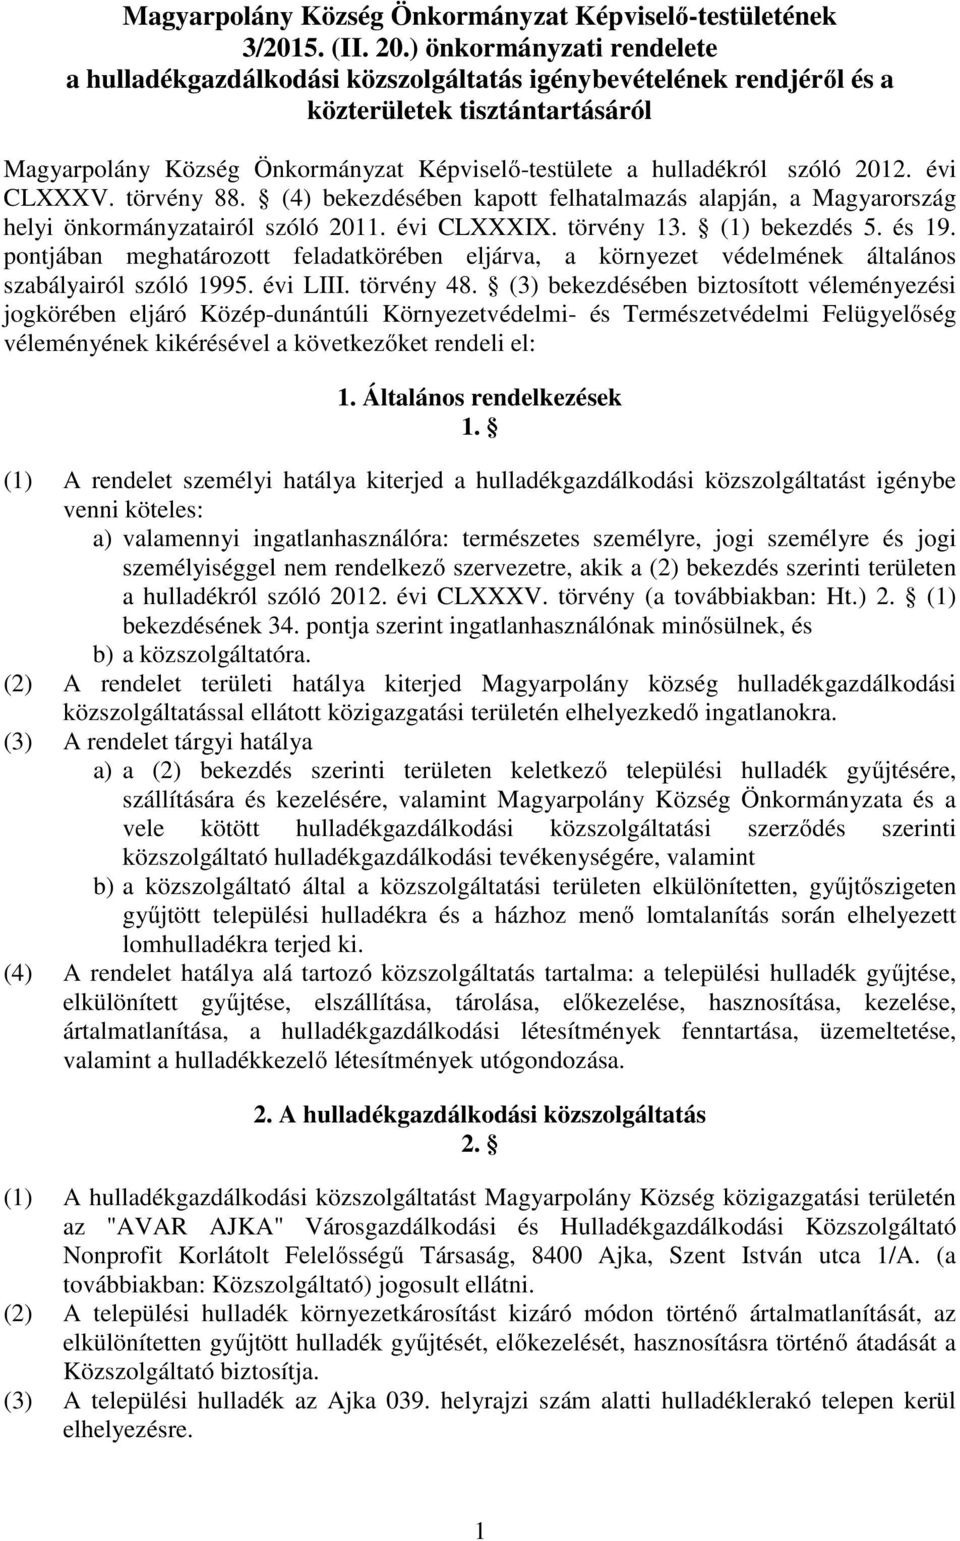 szóló 2012. évi CLXXXV. törvény 88. (4) bekezdésében kapott felhatalmazás alapján, a Magyarország helyi önkormányzatairól szóló 2011. évi CLXXXIX. törvény 13. (1) bekezdés 5. és 19.